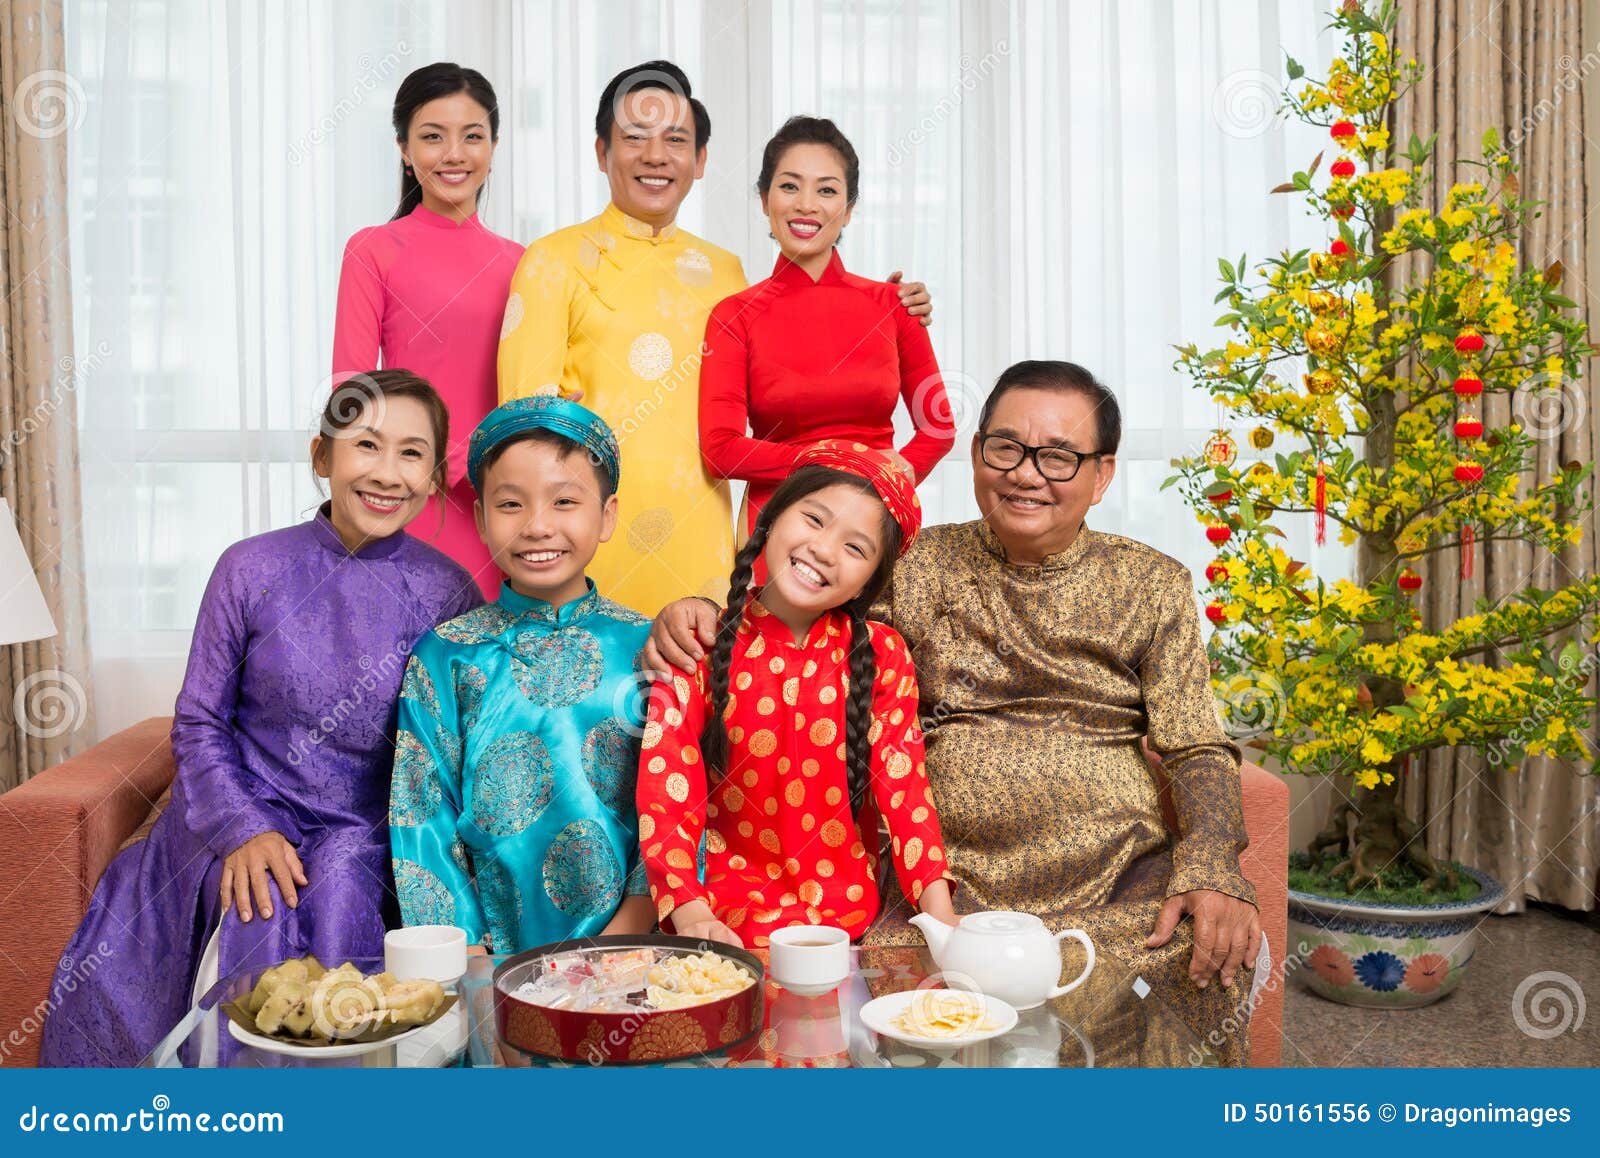 Wietnamska Rodzina W Krajowych Kostiumach Zdjęcie Stock - Obraz ...